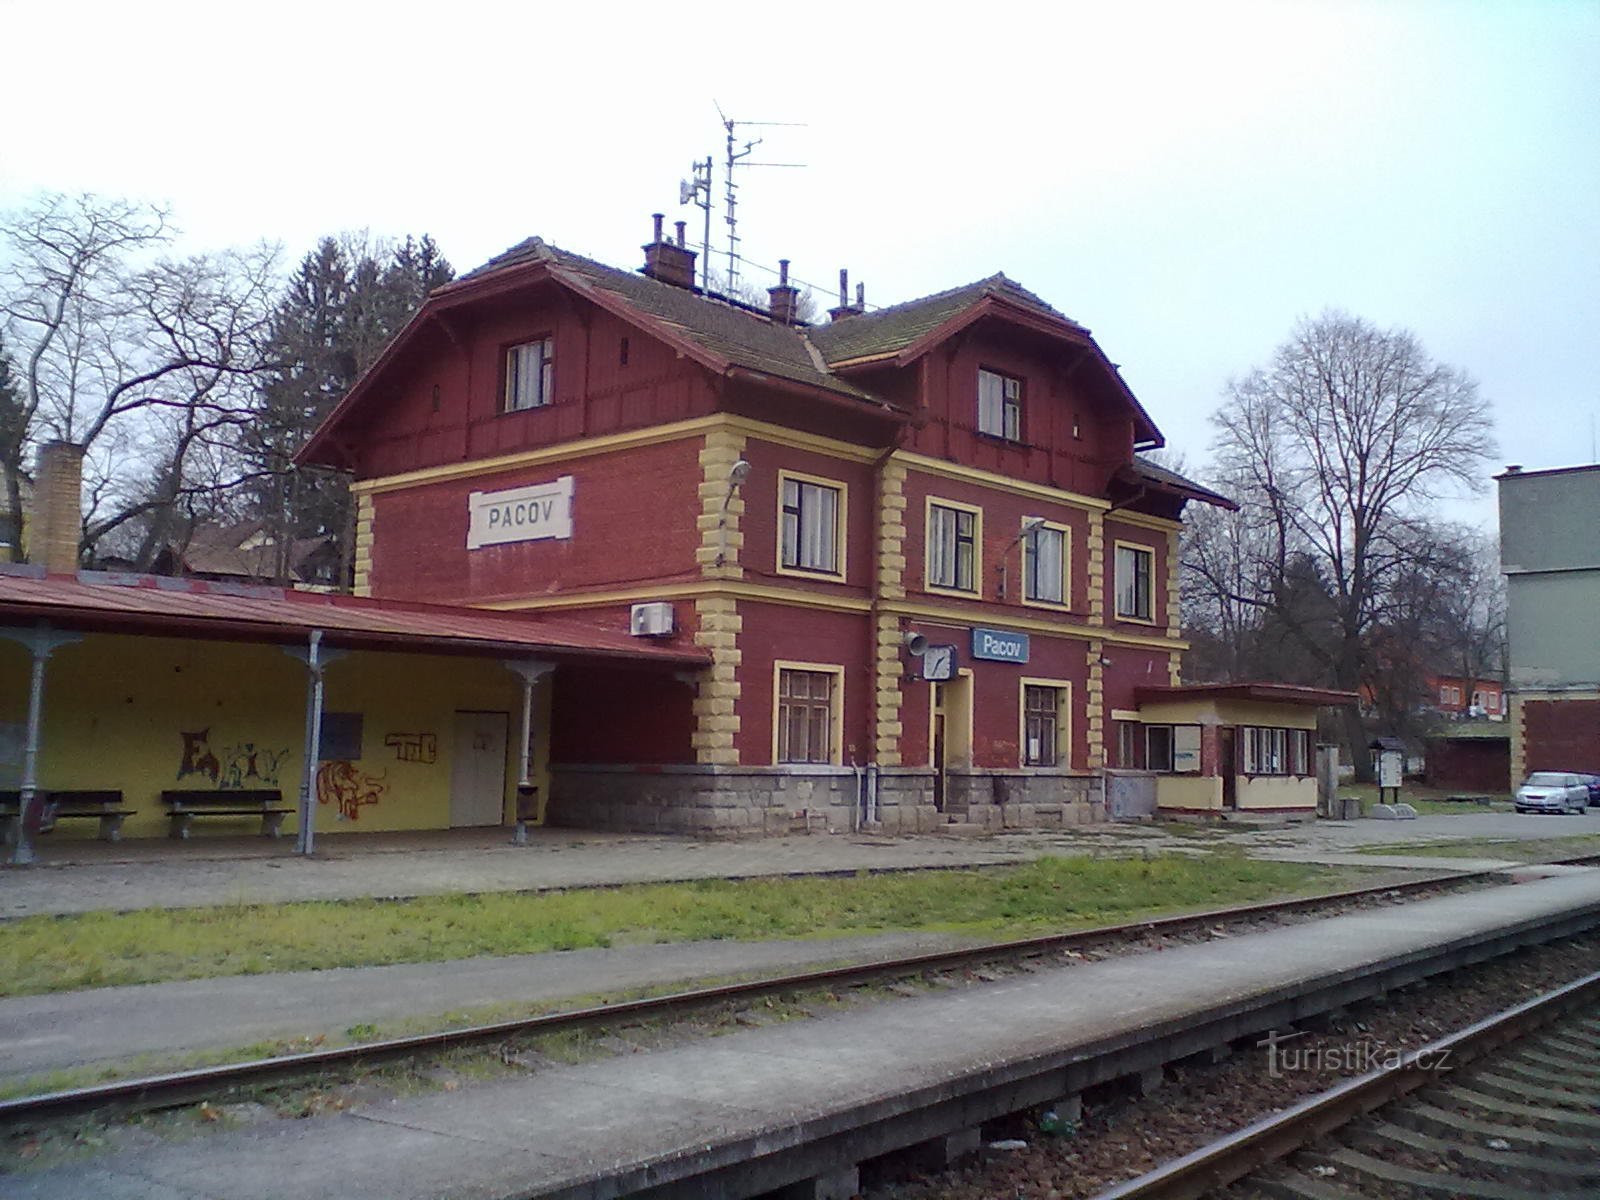 1. Pacov vasútállomás - a zarándoklat kezdő- és végpontja.